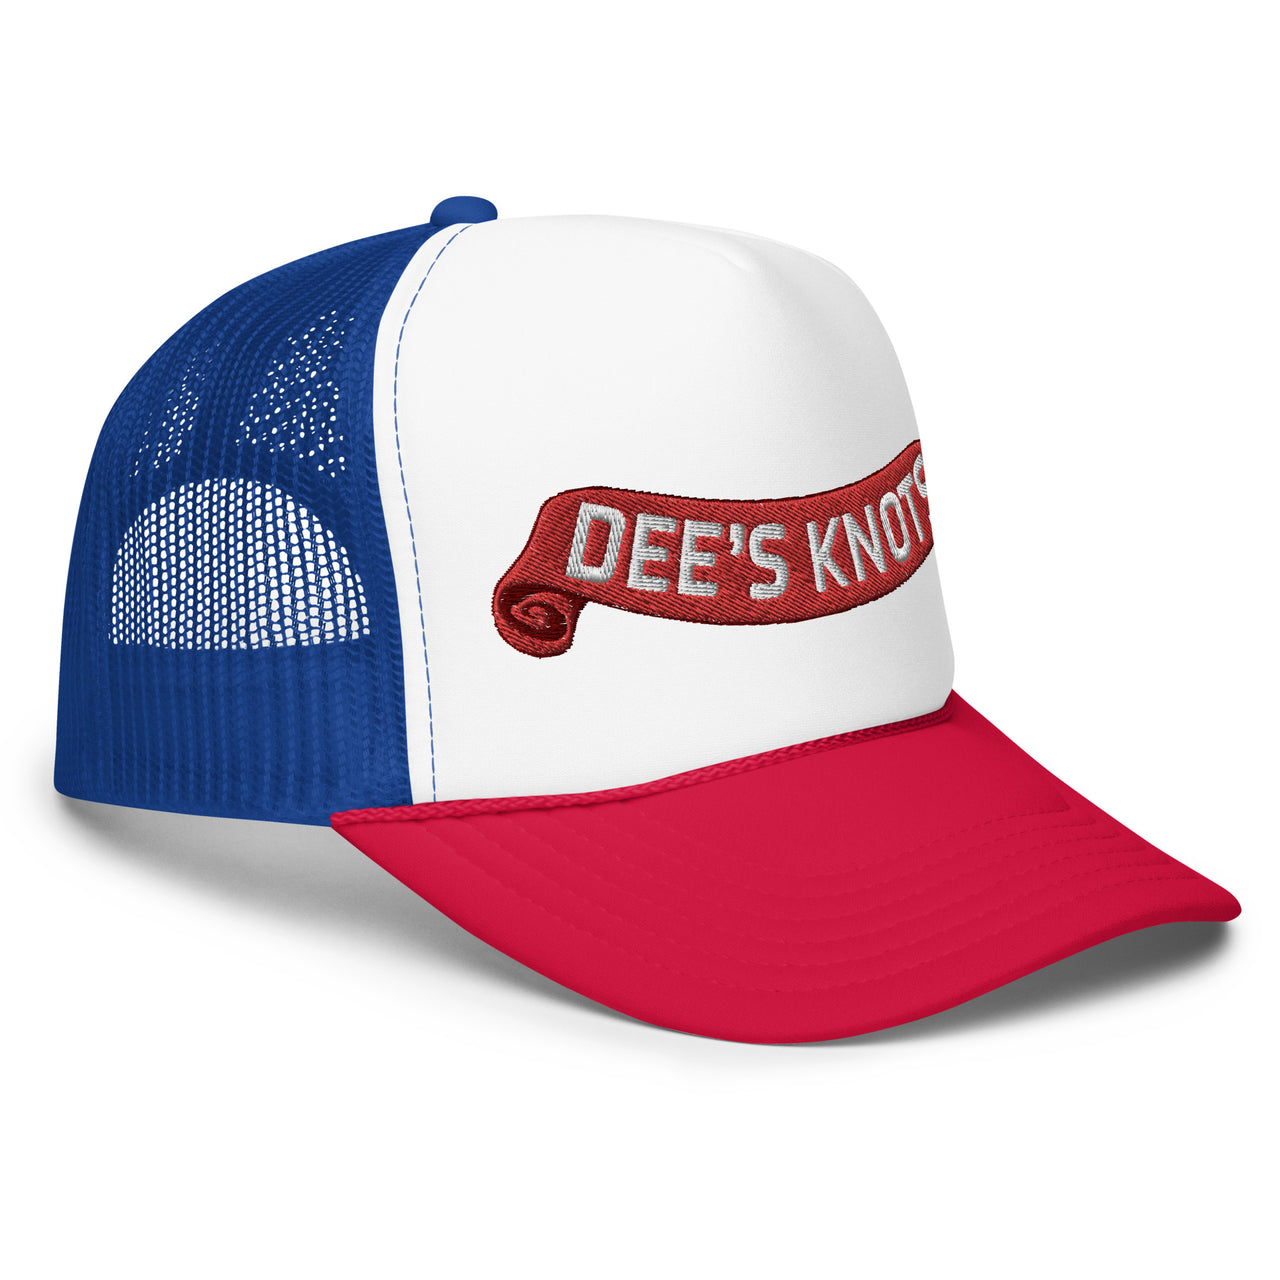 Dee's Knots- Foam trucker hat